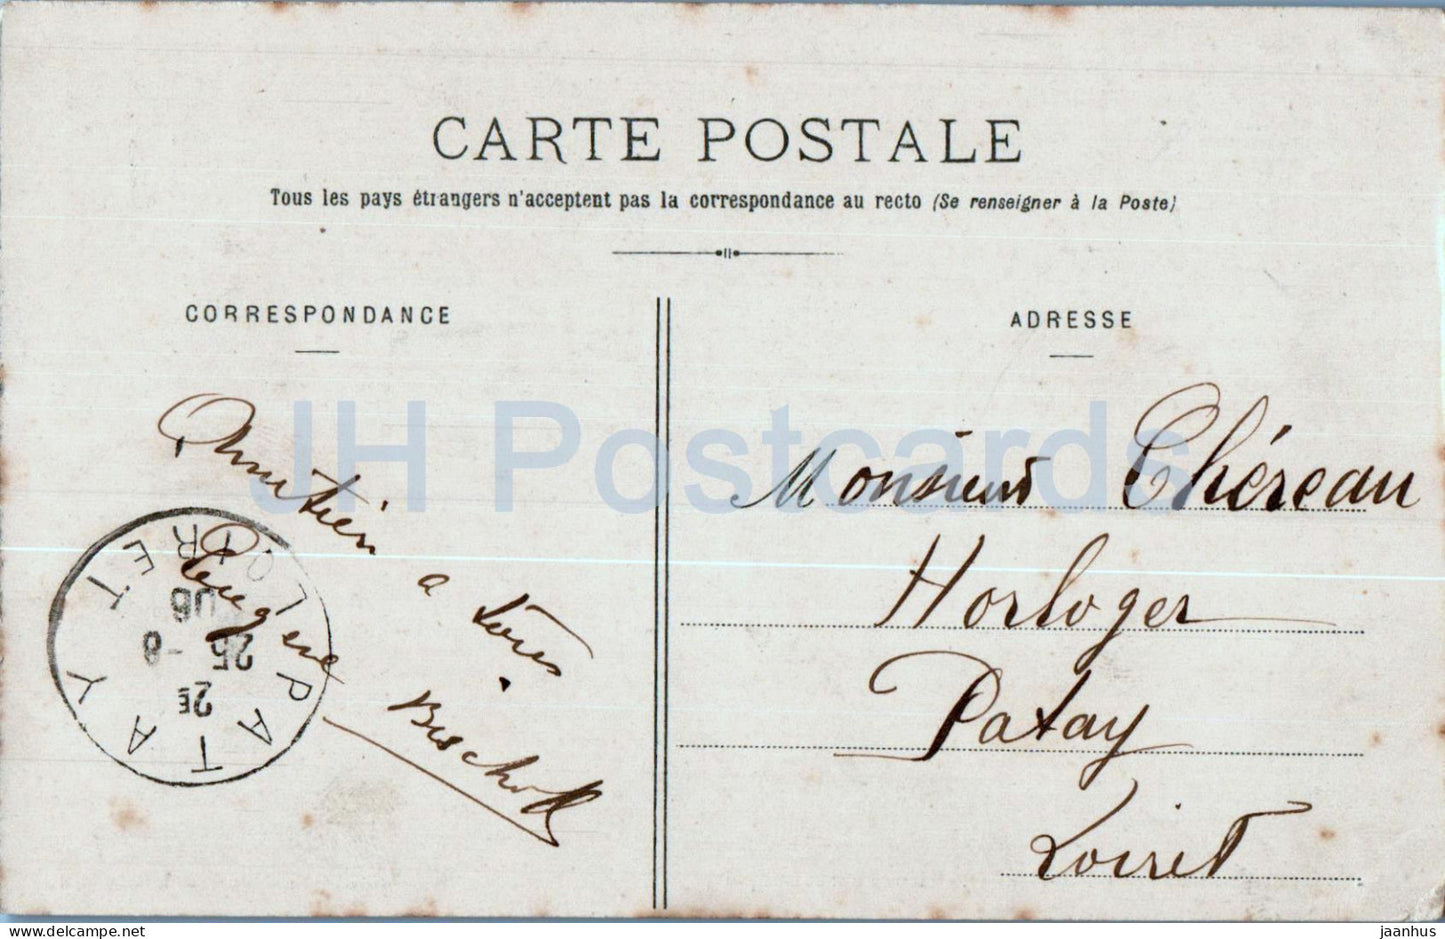 Chateauneuf Sur Loire - Vieux Pont et Donjon - bridge - 160 - old postcard - 1906 - France - used